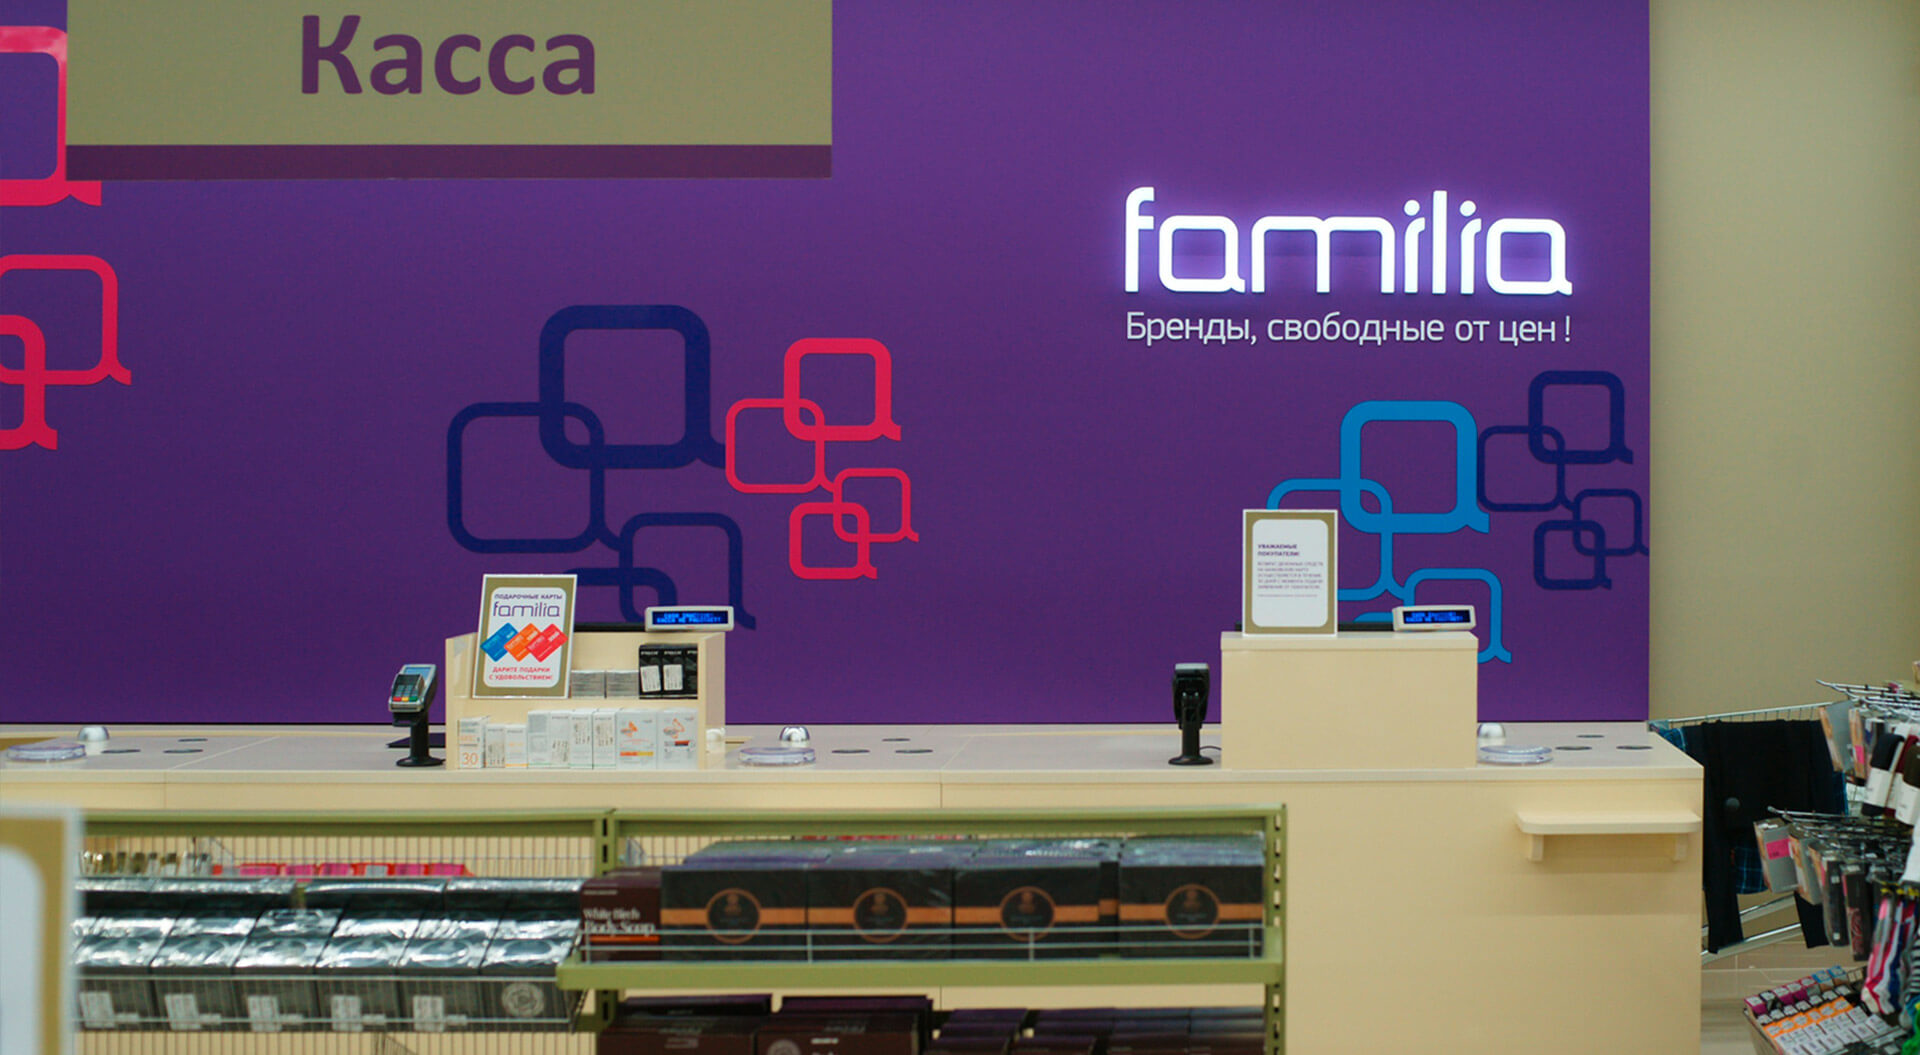 Familia fashion stores brand identity Russia, store cash desk